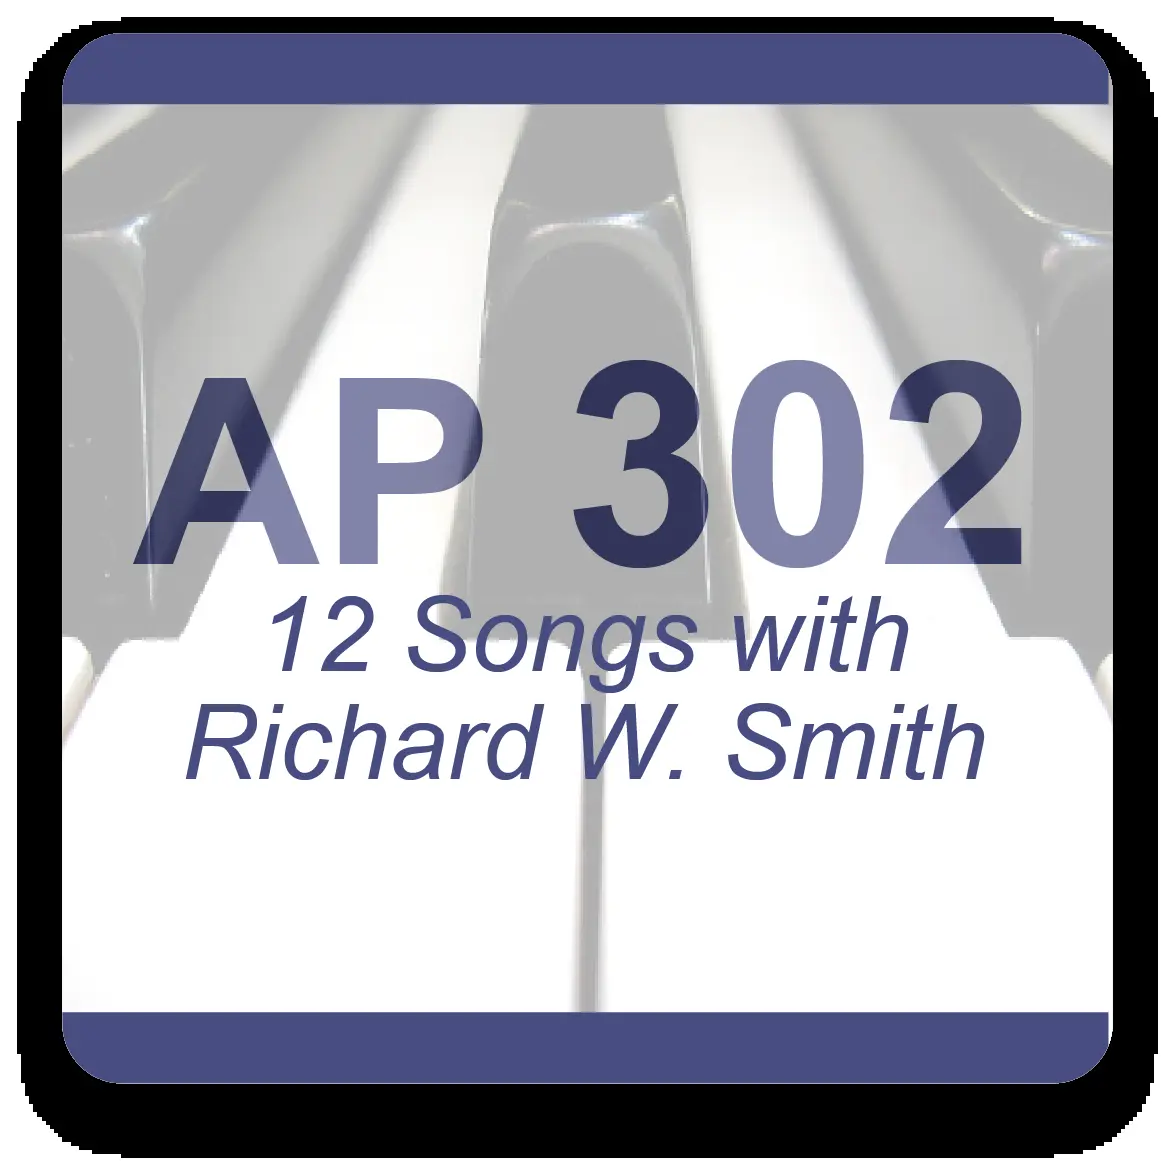 Music by Richard W. Smith